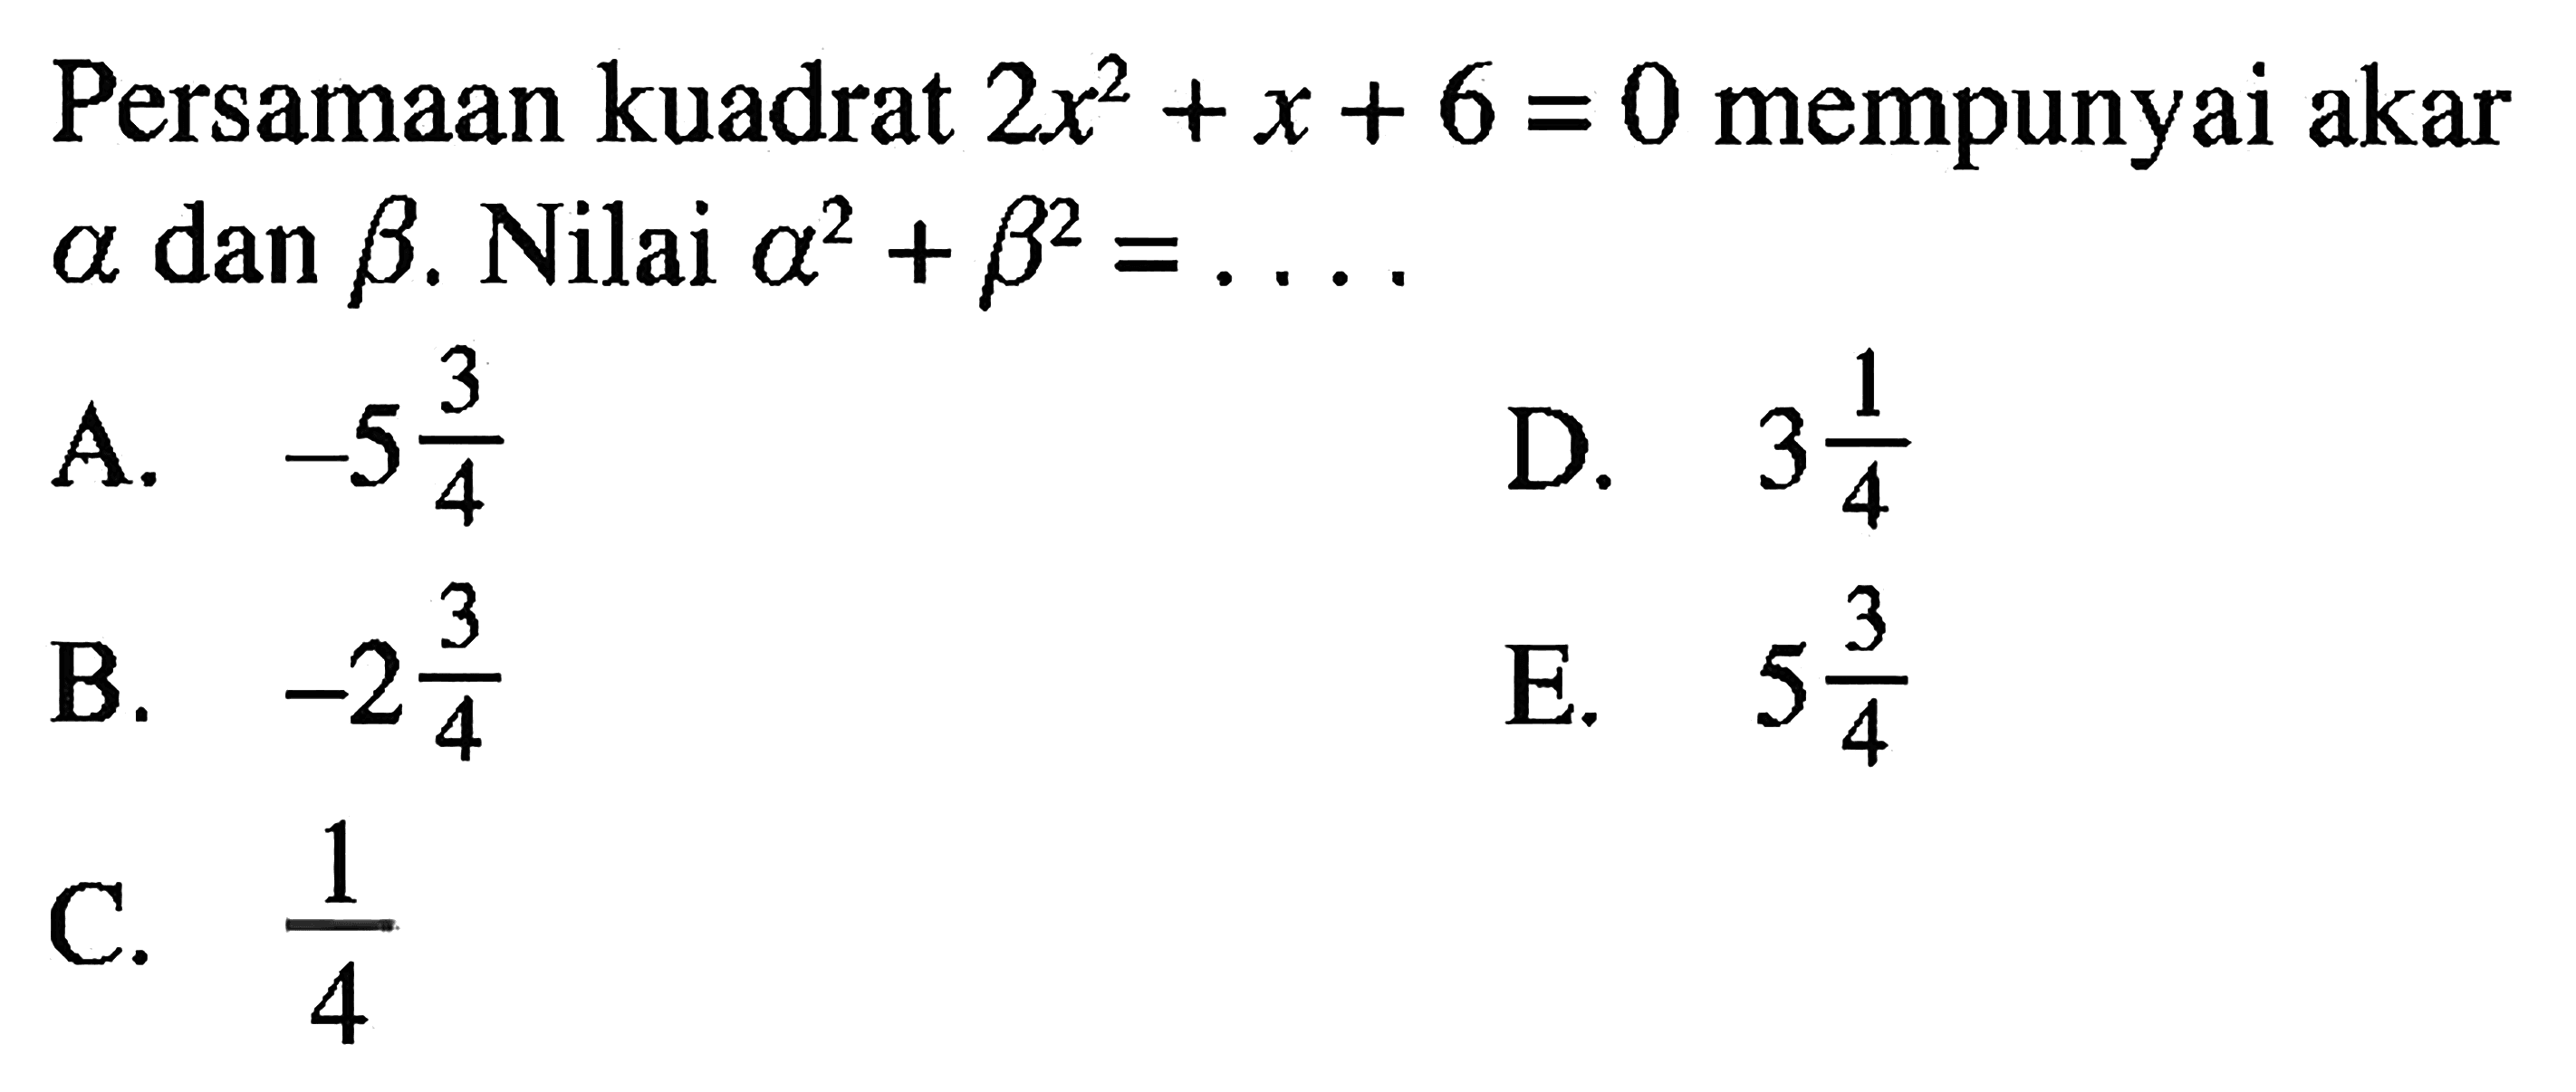 Persamaan kuadrat 2x^2+x+6=0 mempunyai akar a dan b. Nilai a^2+b^2=....